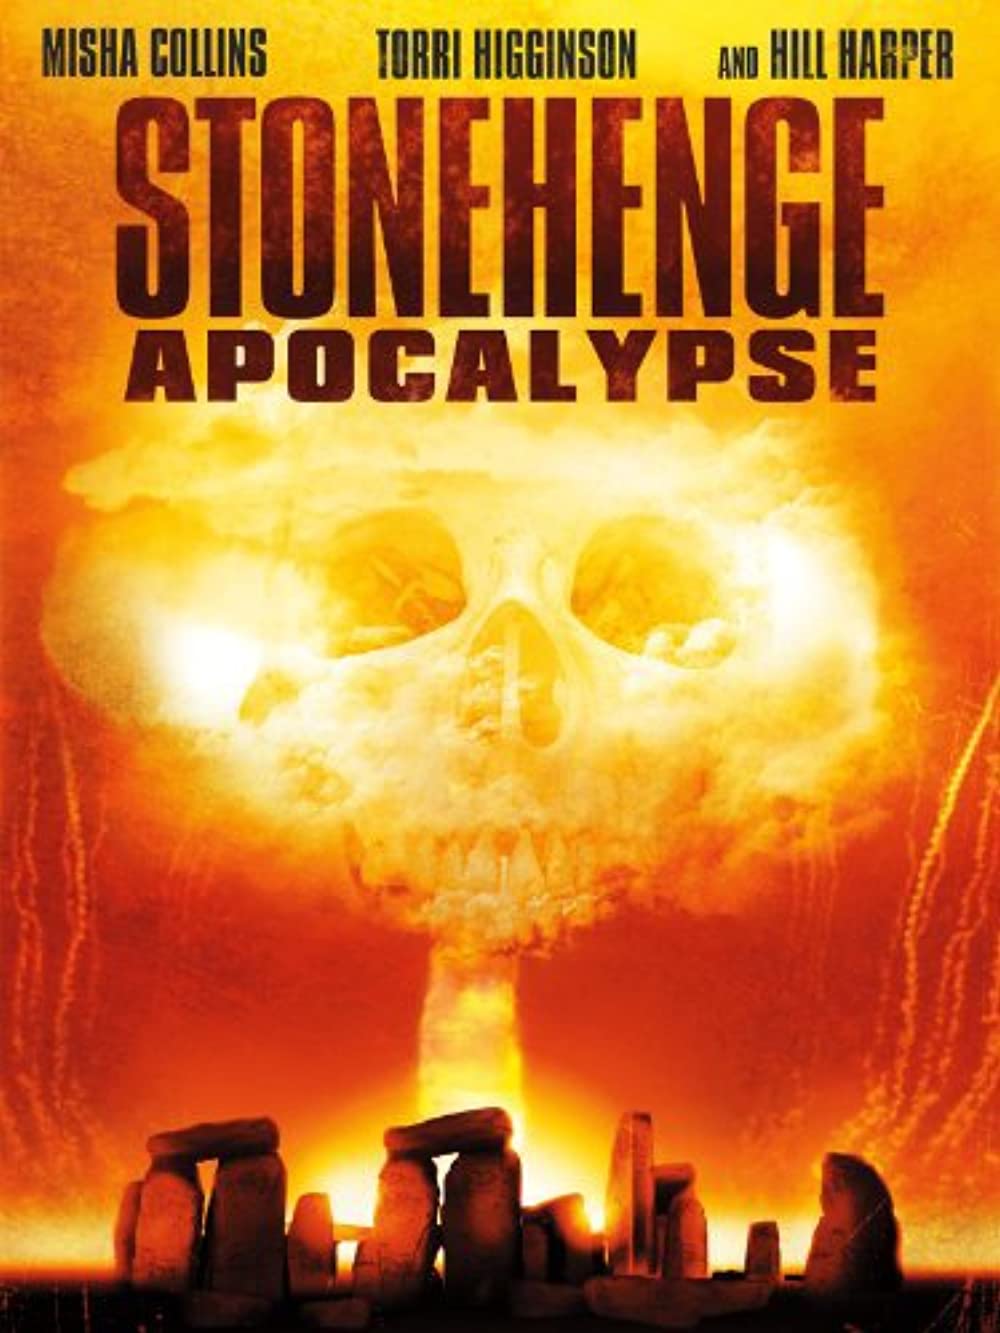 Download Stonehenge Apocalypse Movie | Watch Stonehenge Apocalypse Review